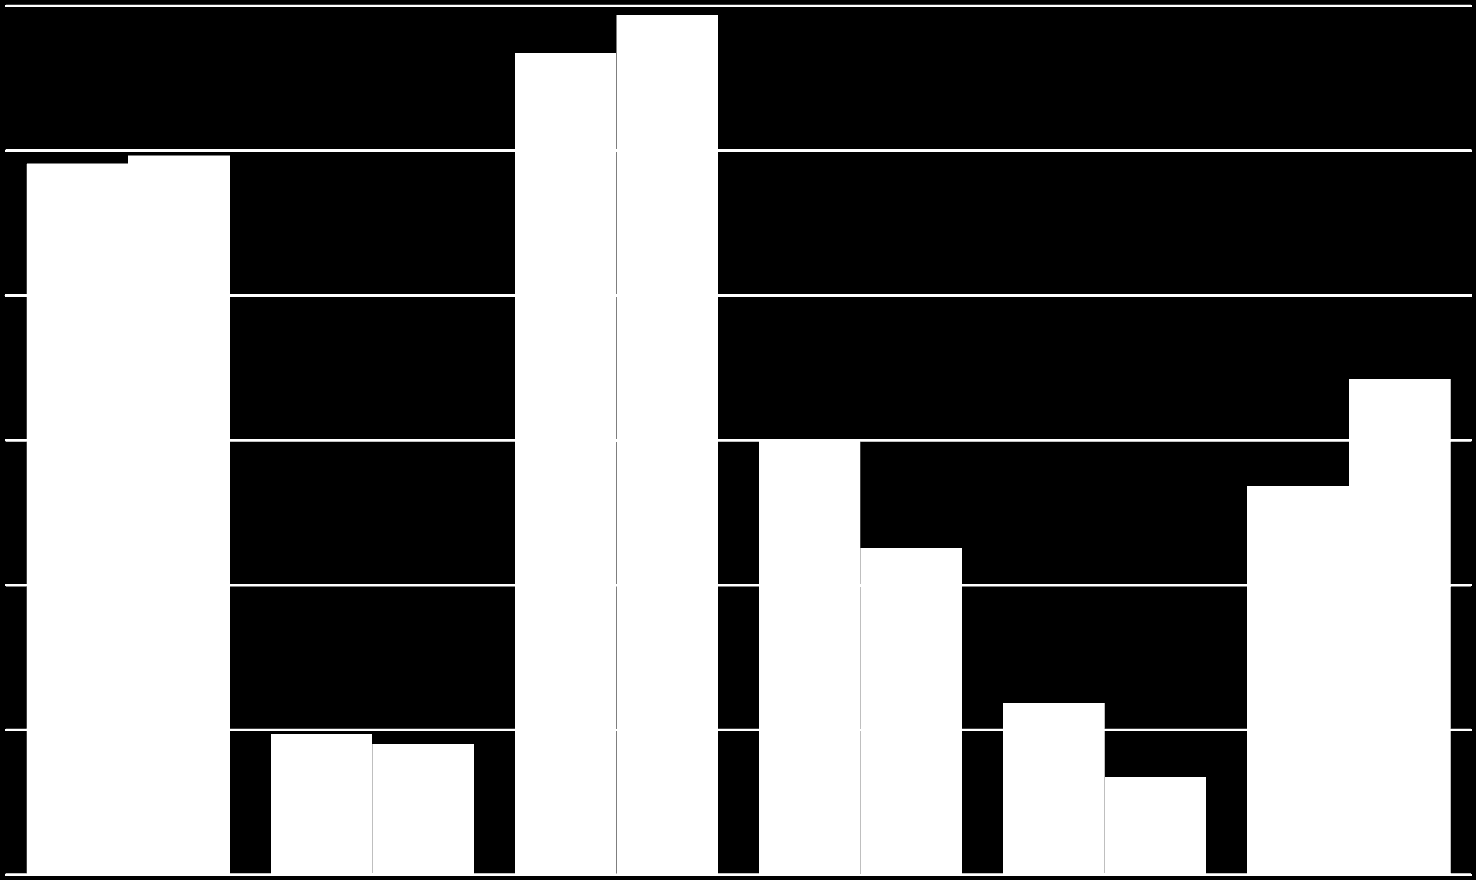 Situação do Mercado Gás Natural Reservas Provadas (Dezembro 2012) (trilhões de m 3 ) Gás Natural Produção e Consumo (Dezembro 2012) (bilhões de m 3 /dia) 2,84 2,97 Produção Série2 2,46 2,48 Consumo